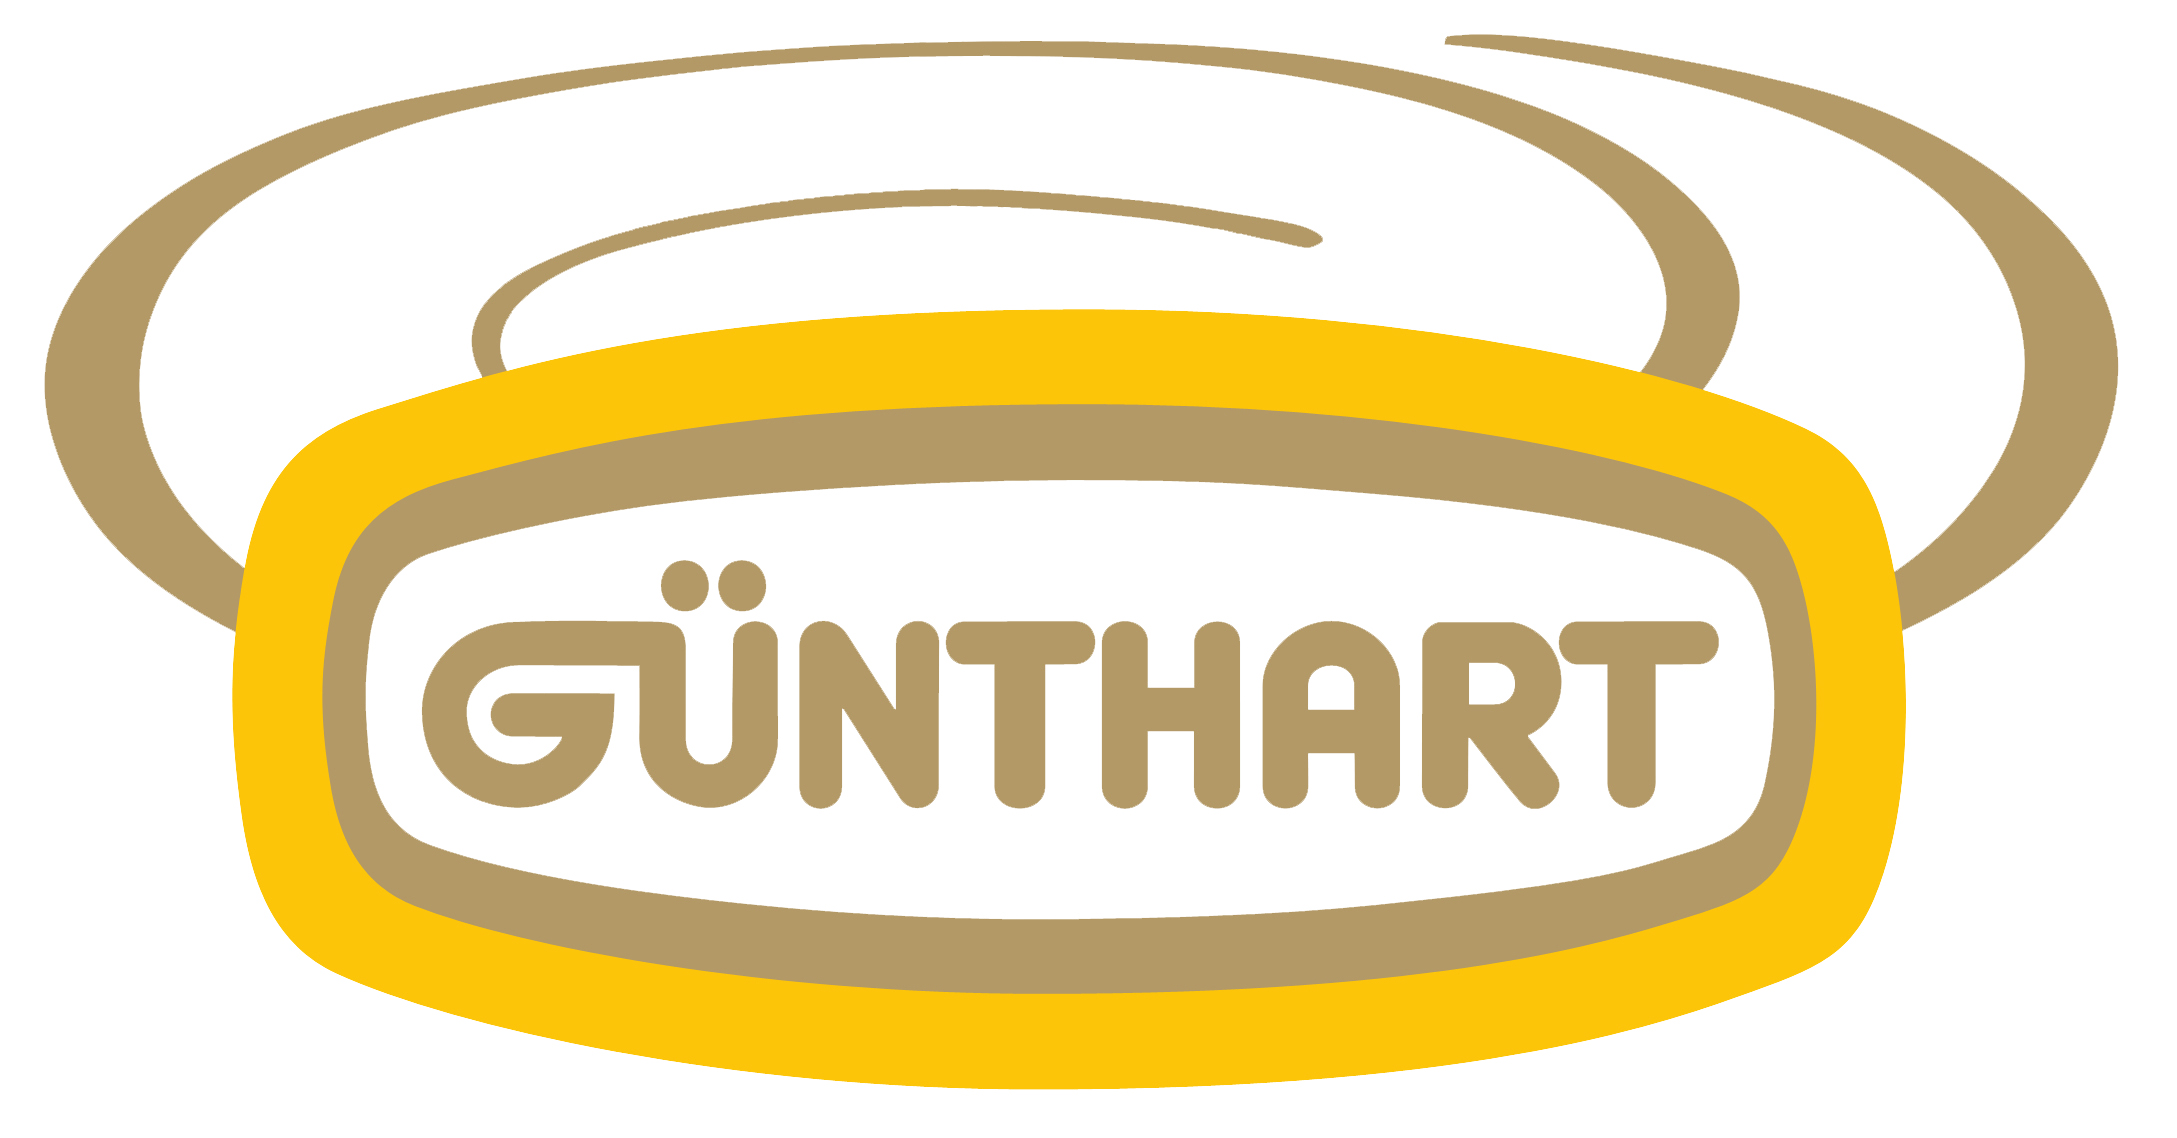 Günthart